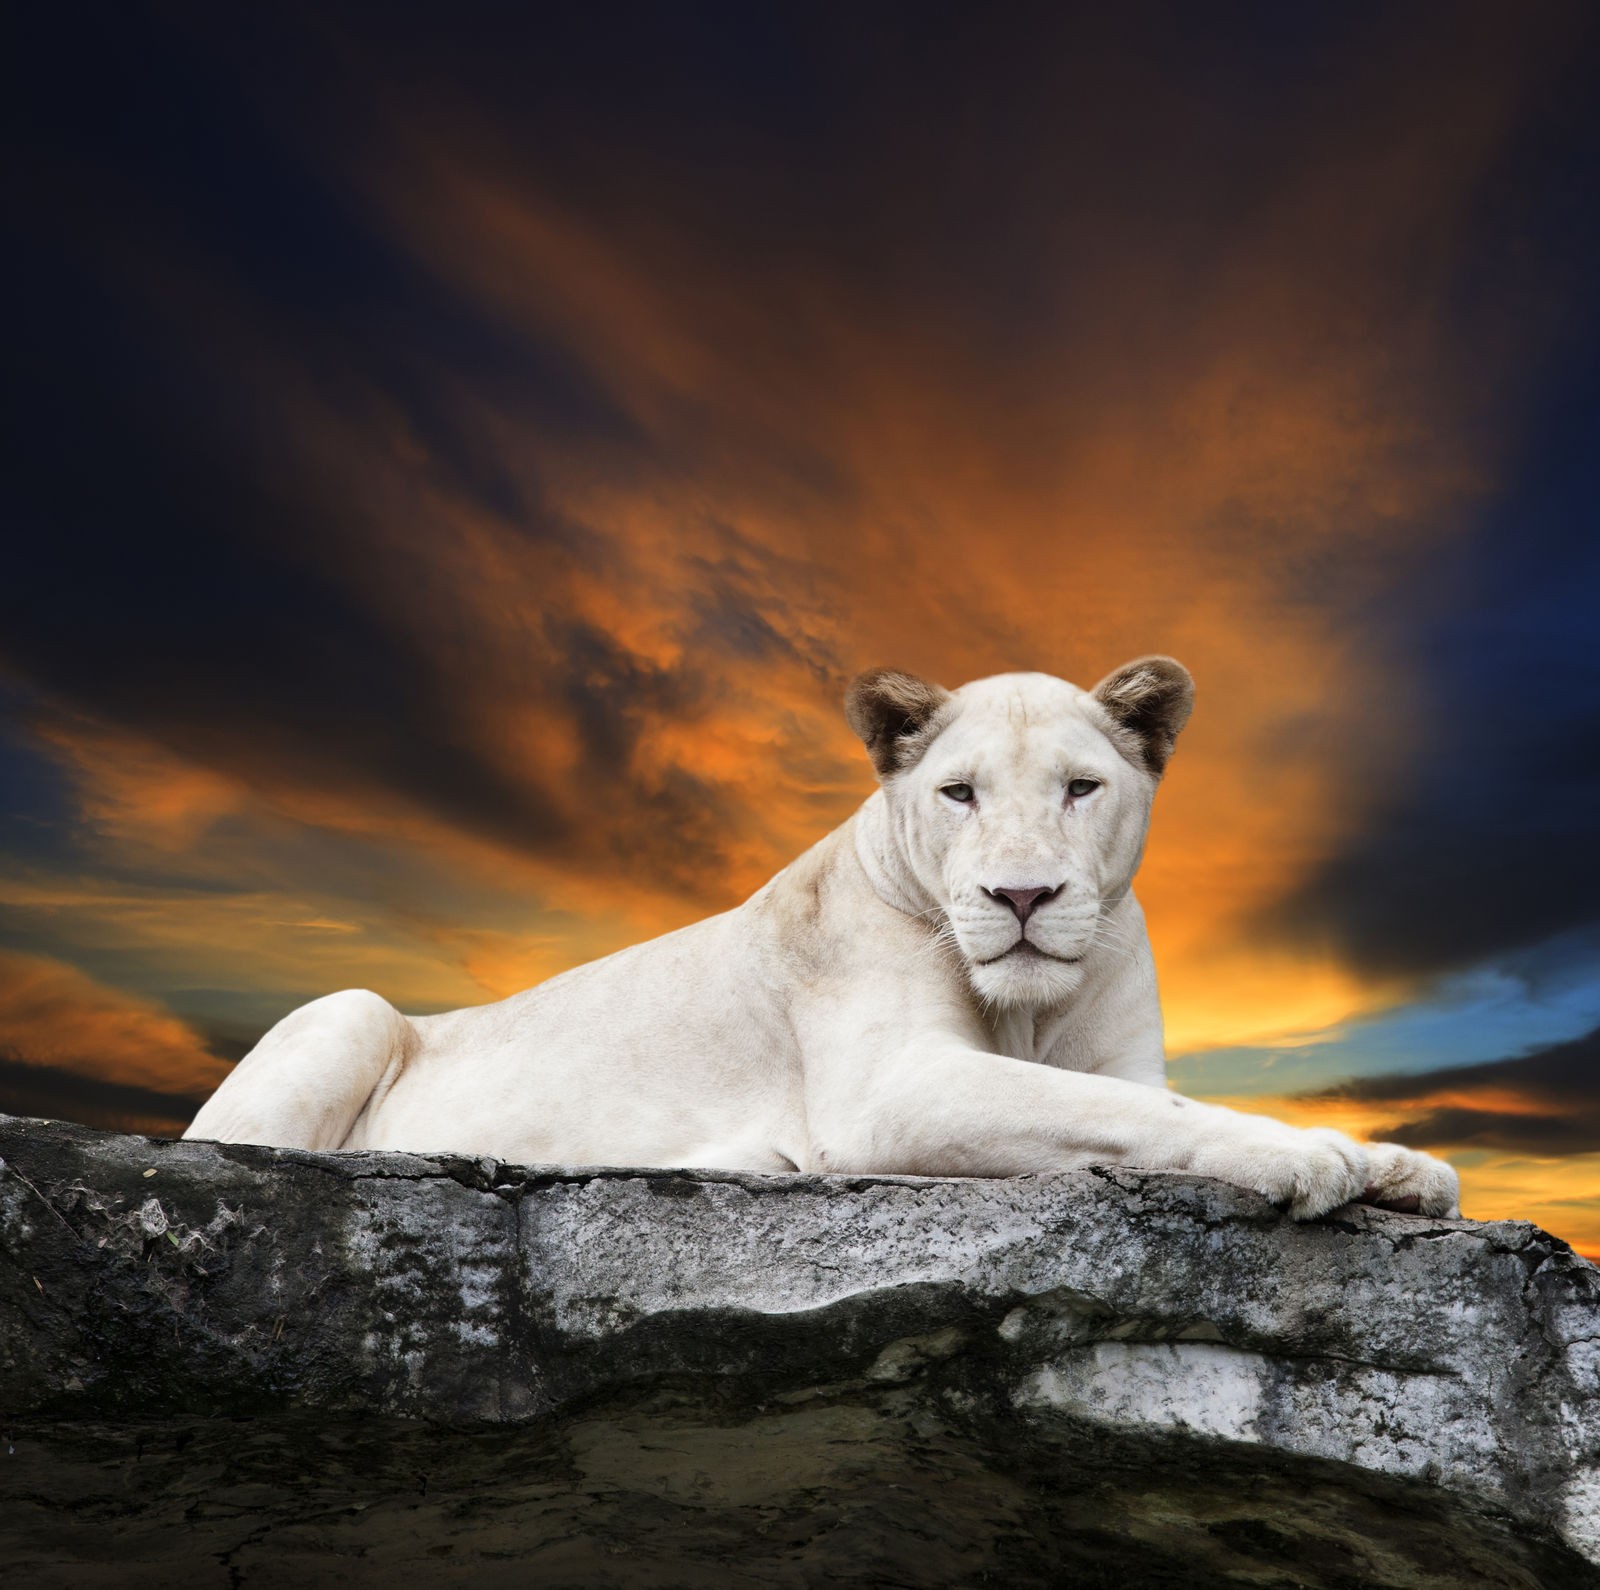 Ρόλερ Ολικής Συσκότισης/Blackout AN0019 Ζώα-Λευκό λιοντάρι